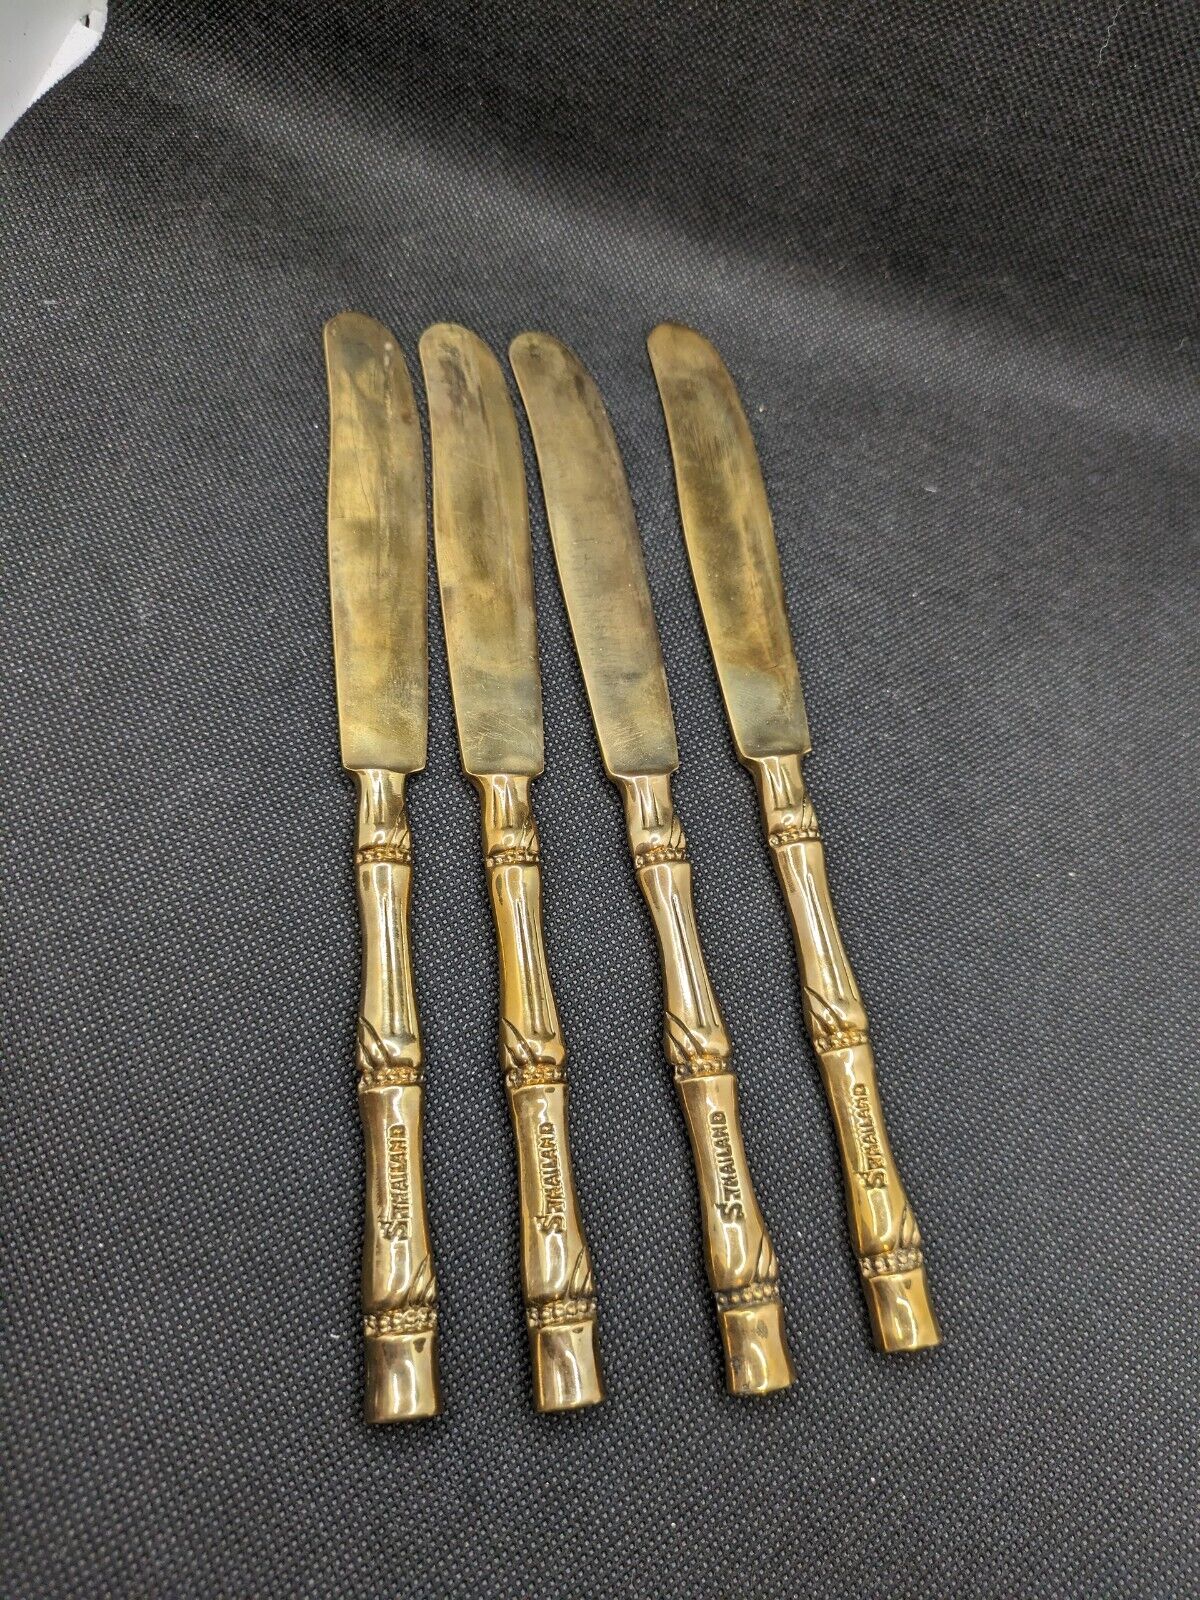 Vintage Thailand Siam Brass Cutlery Bamboo Design